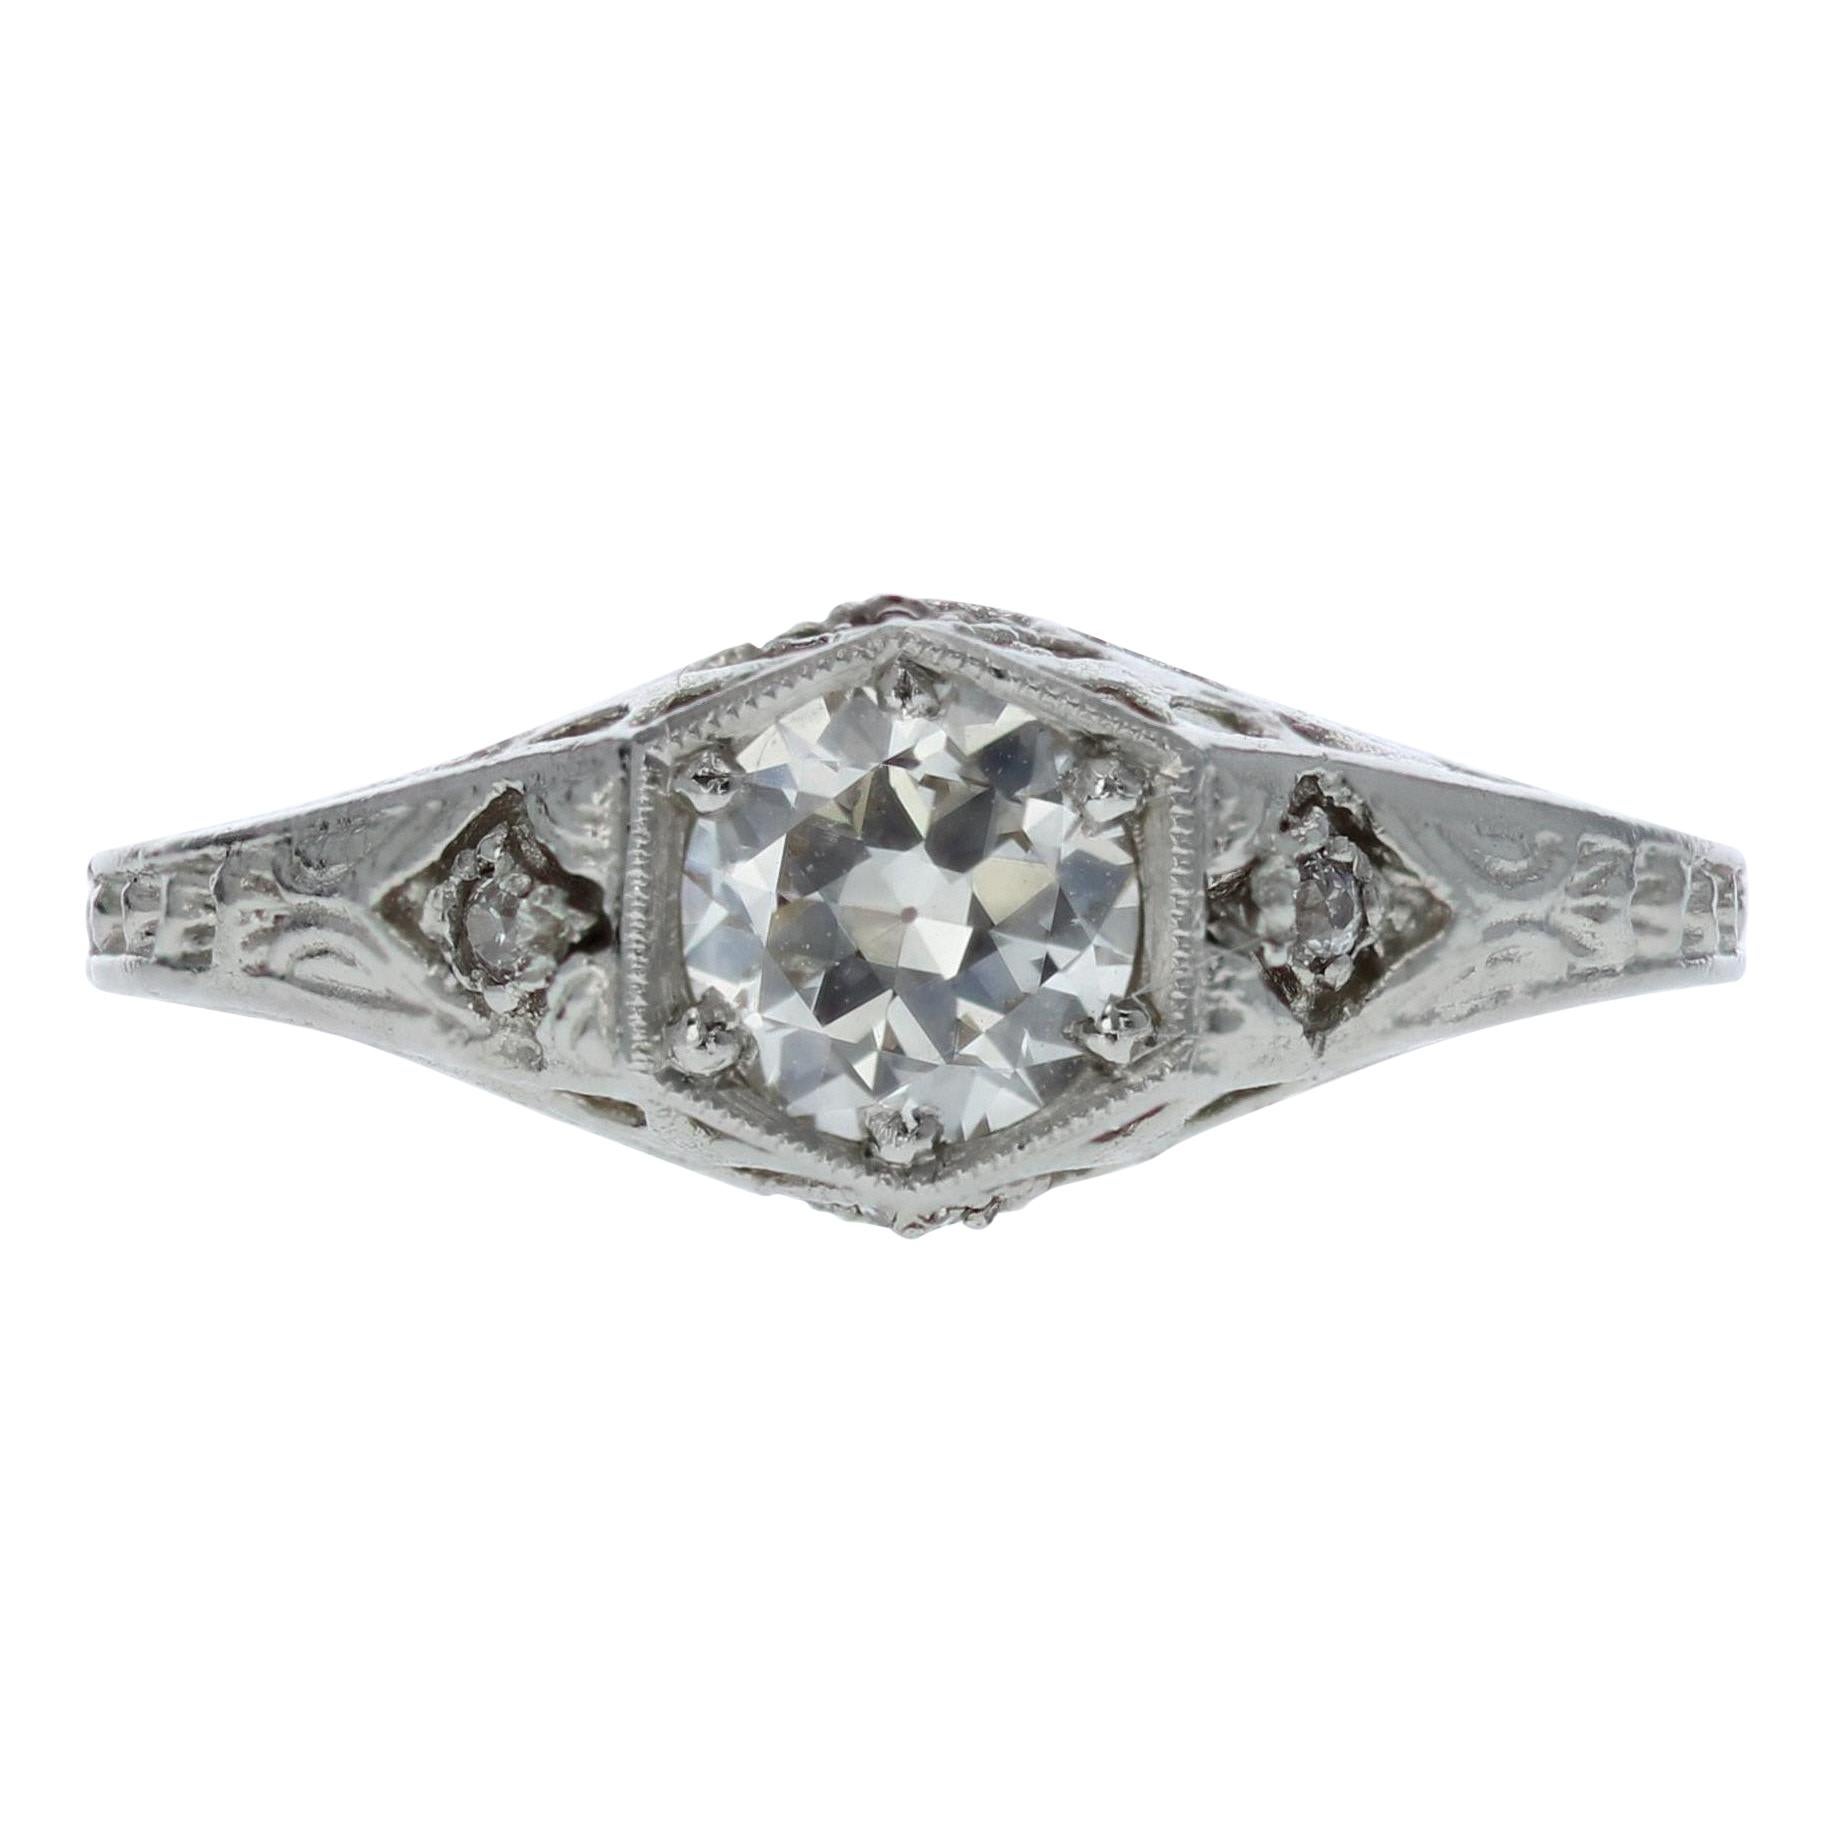 Edwardian Platinum and GIA Diamond Engagement Ring